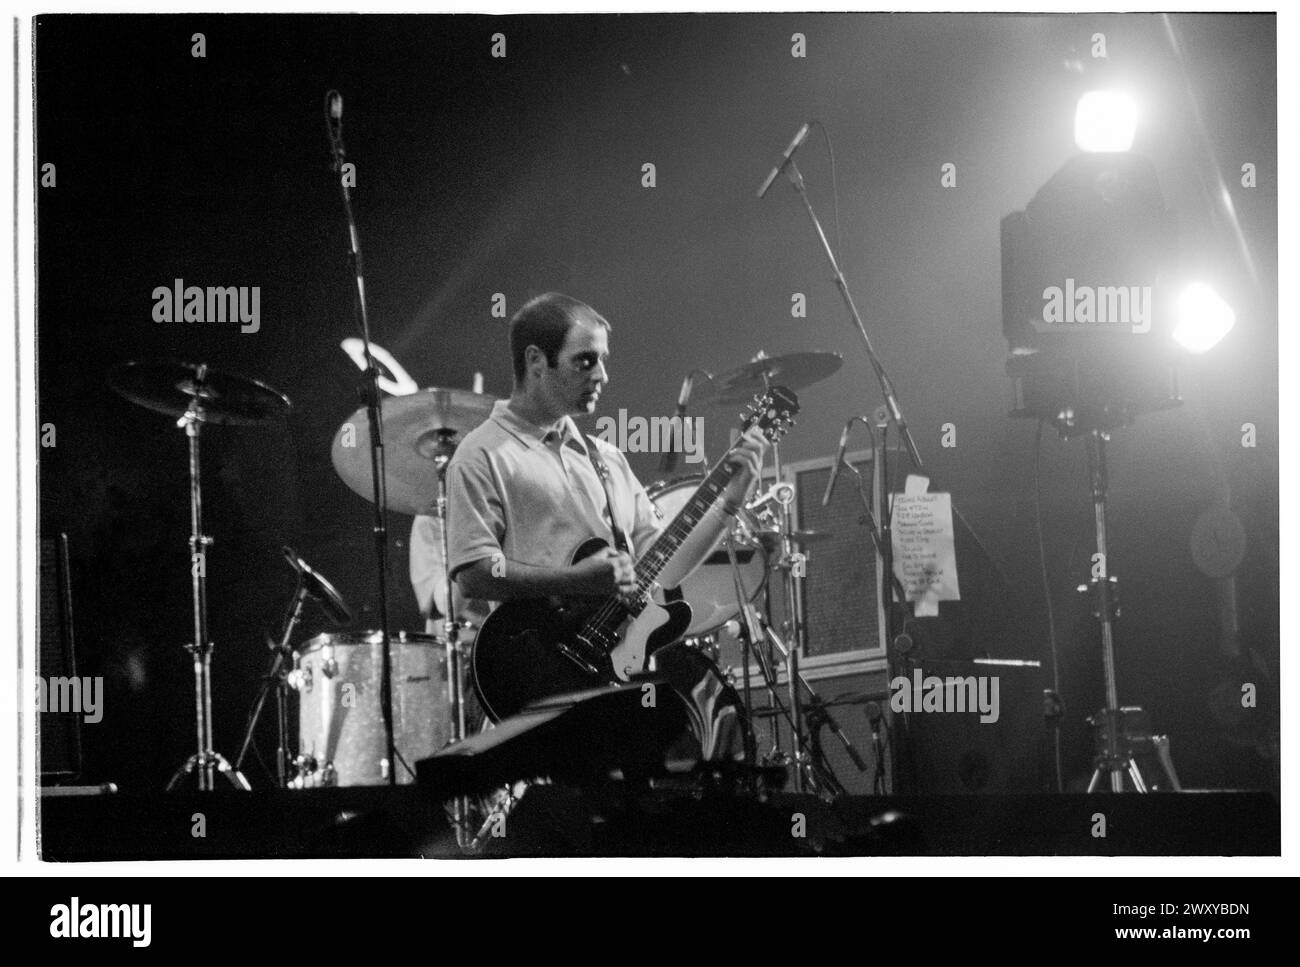 BONEHEAD, OASIS, ERSTE GLASTONBURY-HEADLINE, 1995: Bonehead (Paul Arthurs) the Rhythmus-Gitarrist von Oasis, der auf dem Höhepunkt ihrer Berühmtheit beim Glastonbury Festival, Pilton Farm, Somerset, England, 24. Juni 1995 als Headliner auf der Main Stage auftritt. 1995 feierte das Festival sein 25-jähriges Bestehen. In diesem Jahr gab es keine Pyramidenphase, da sie abgebrannt war. Foto: ROB WATKINS Stockfoto